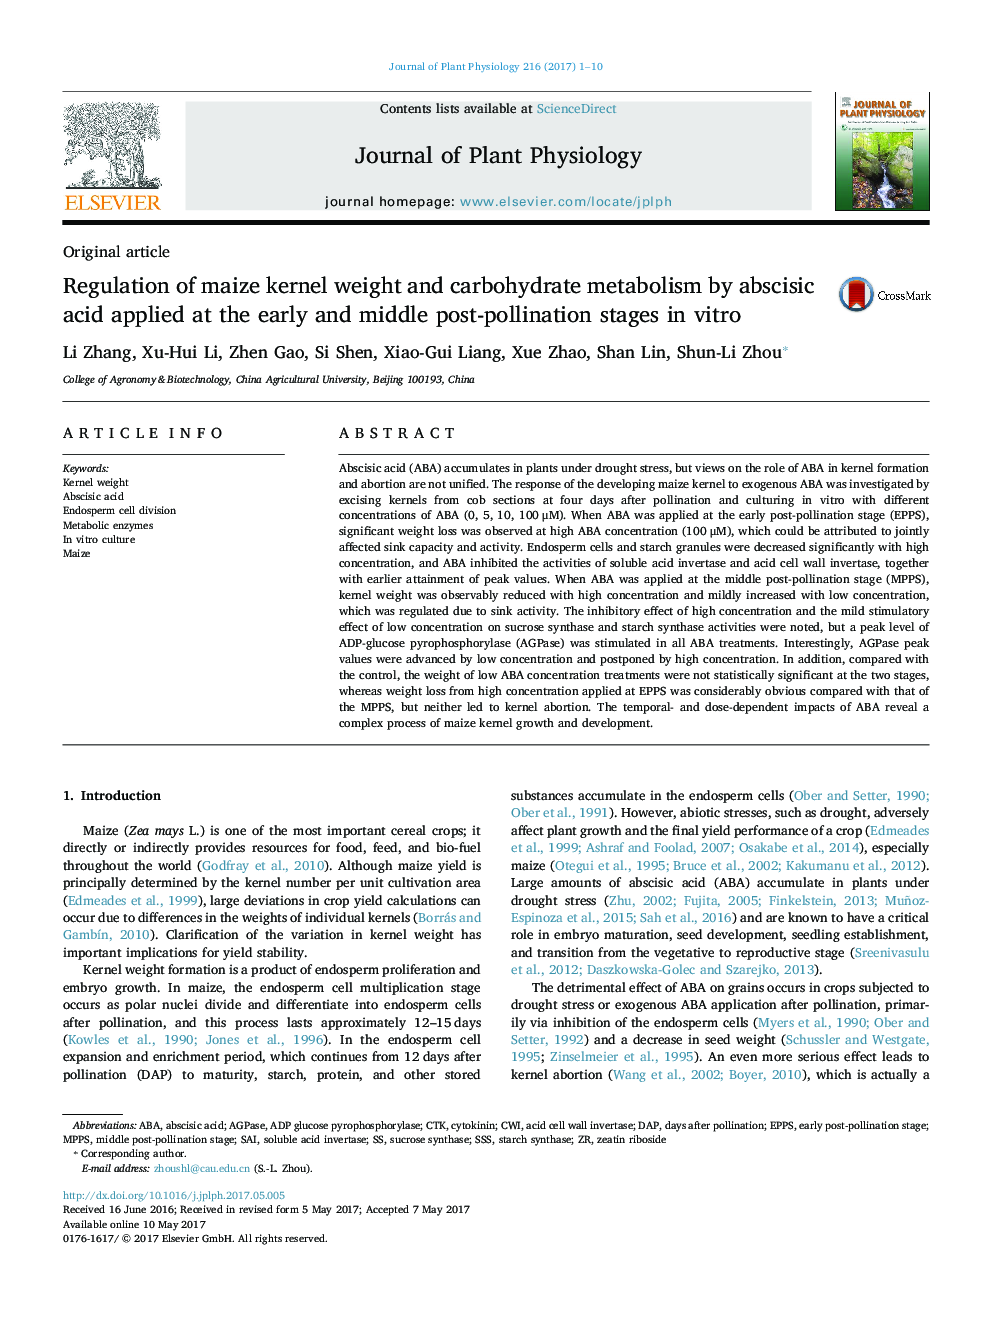 اصل مقاله تعیین وزن هسته ذرت و متابولیسم کربوهیدرات با استفاده از اسید آبسیسیک در مراحل اولیه و بعد از گردهافشی در شرایط آزمایشگاهی 